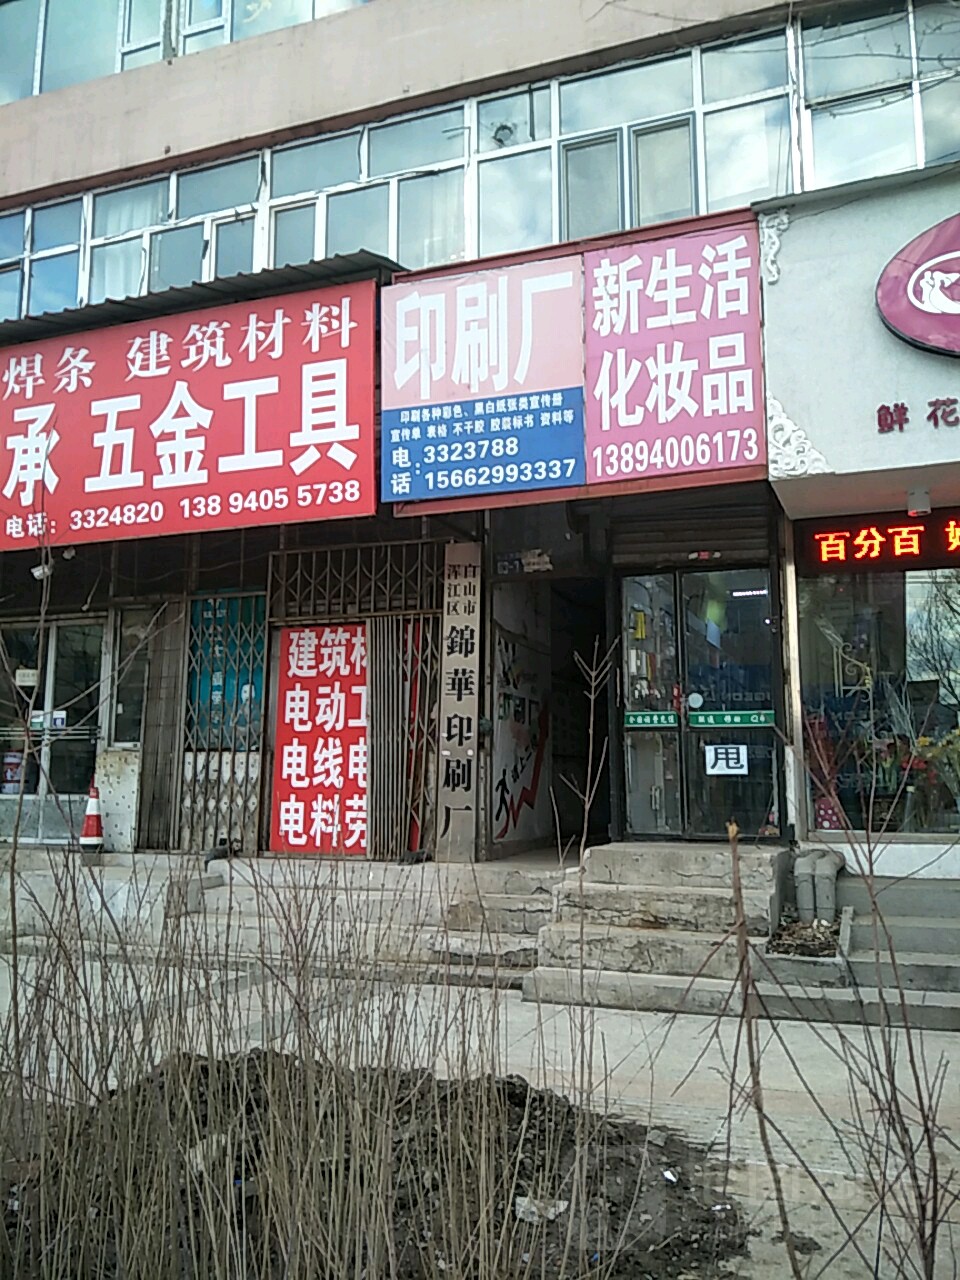 錦華印刷廠